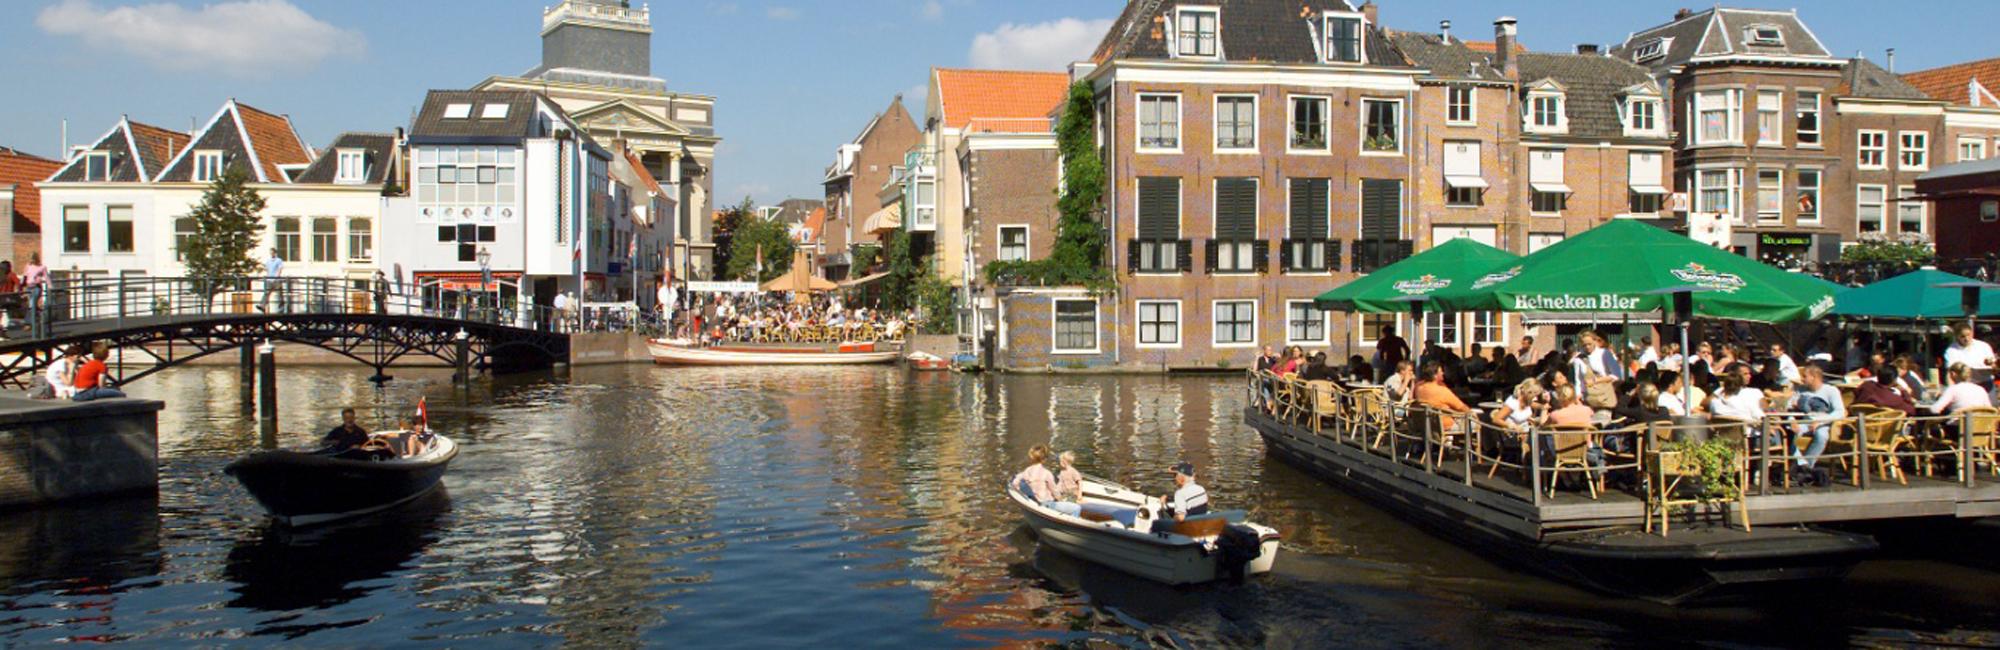 Hollandse Waterslandschappen: fietsen door oerhollandse steden in Nederland via Dutch Bike Tours